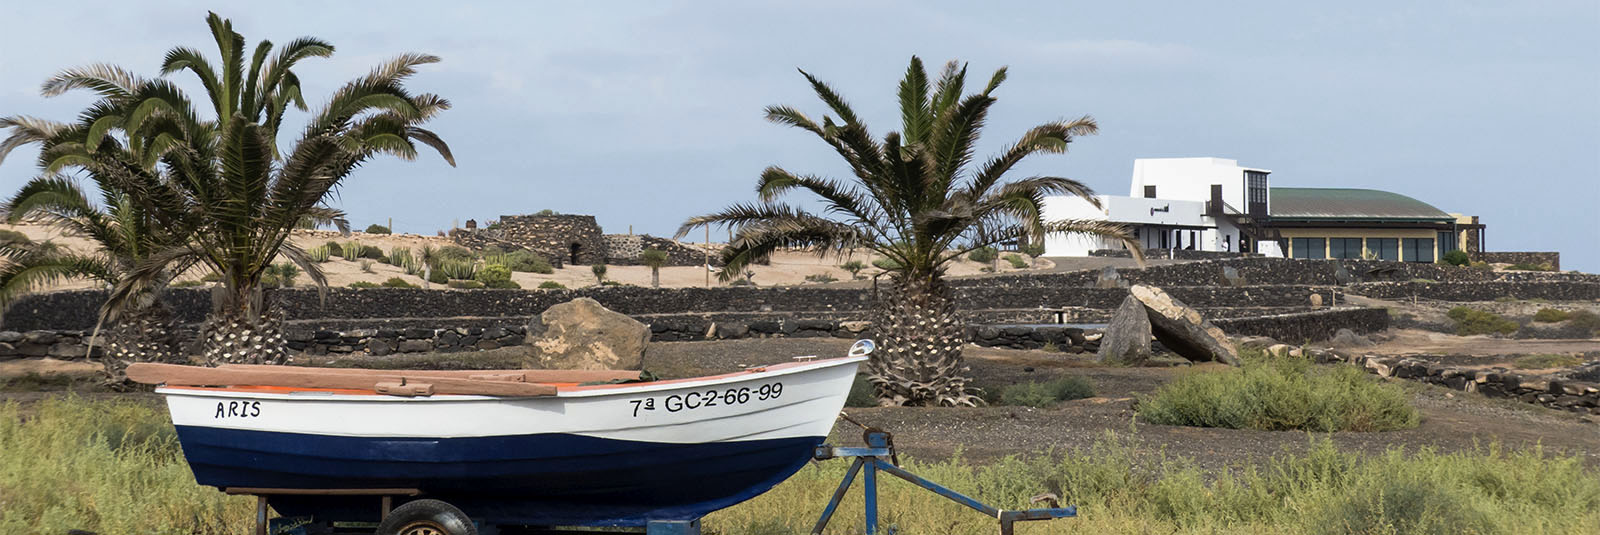 Städte und Ortschaften Fuerteventuras: Salinas del Carmen